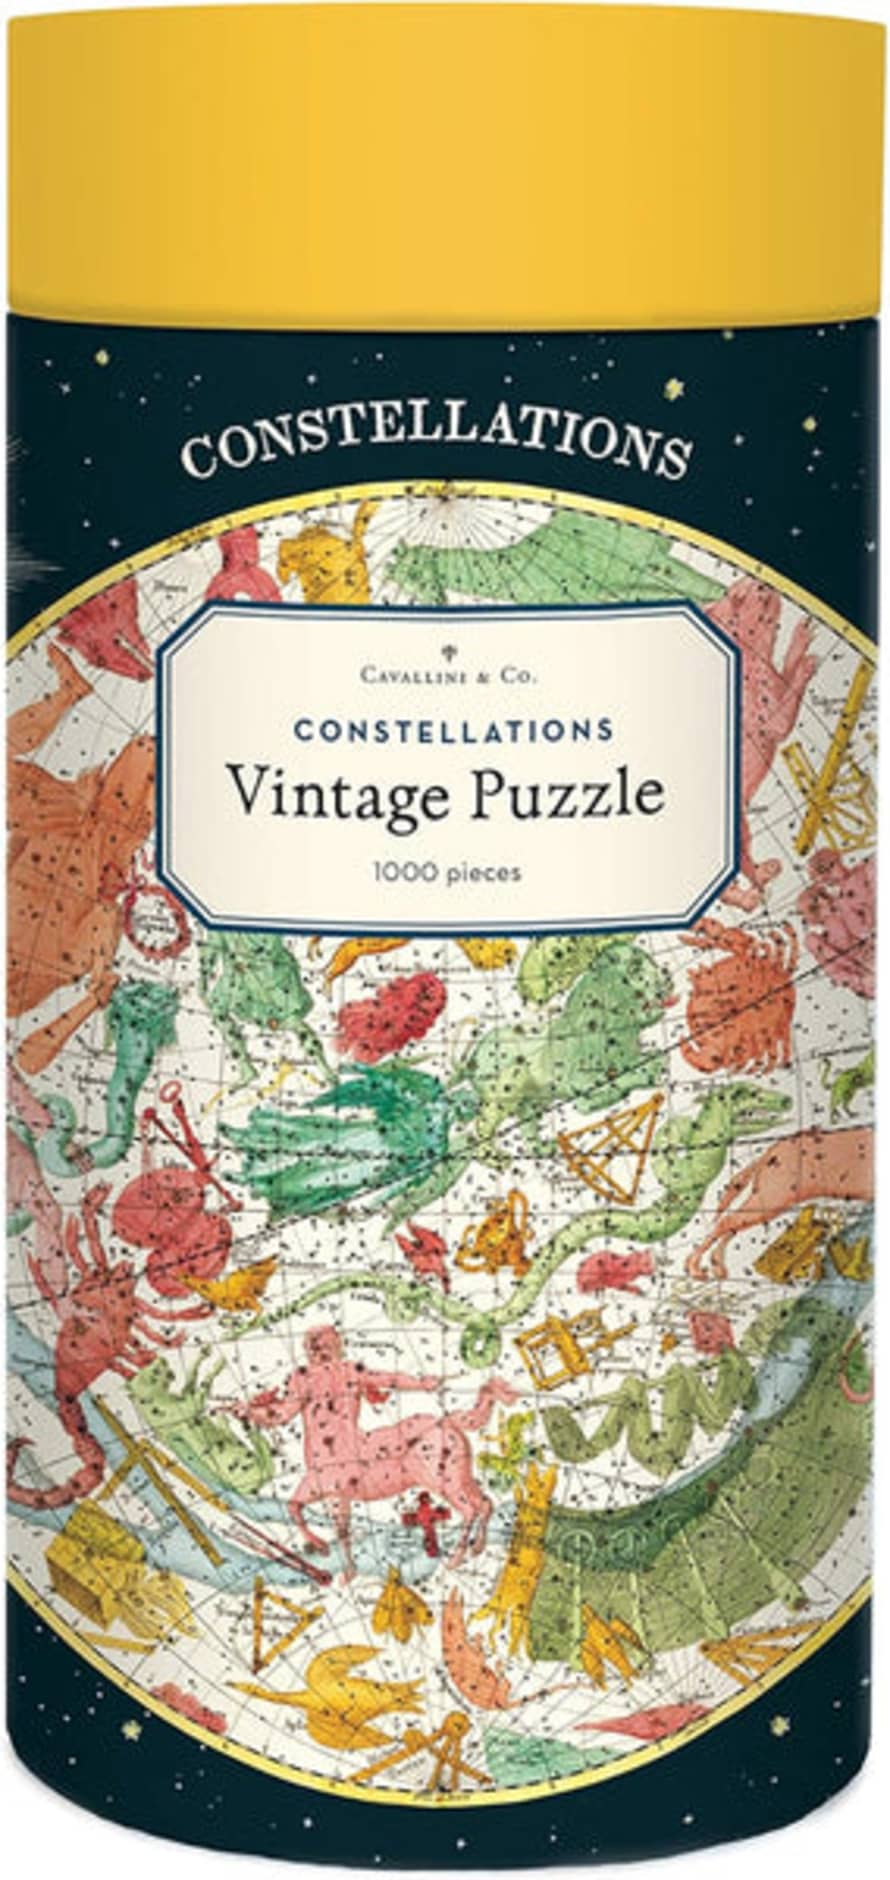 Cavallini & Co Vintage Puzzle 1000 Pz 55x70 Constellations Pzl/const